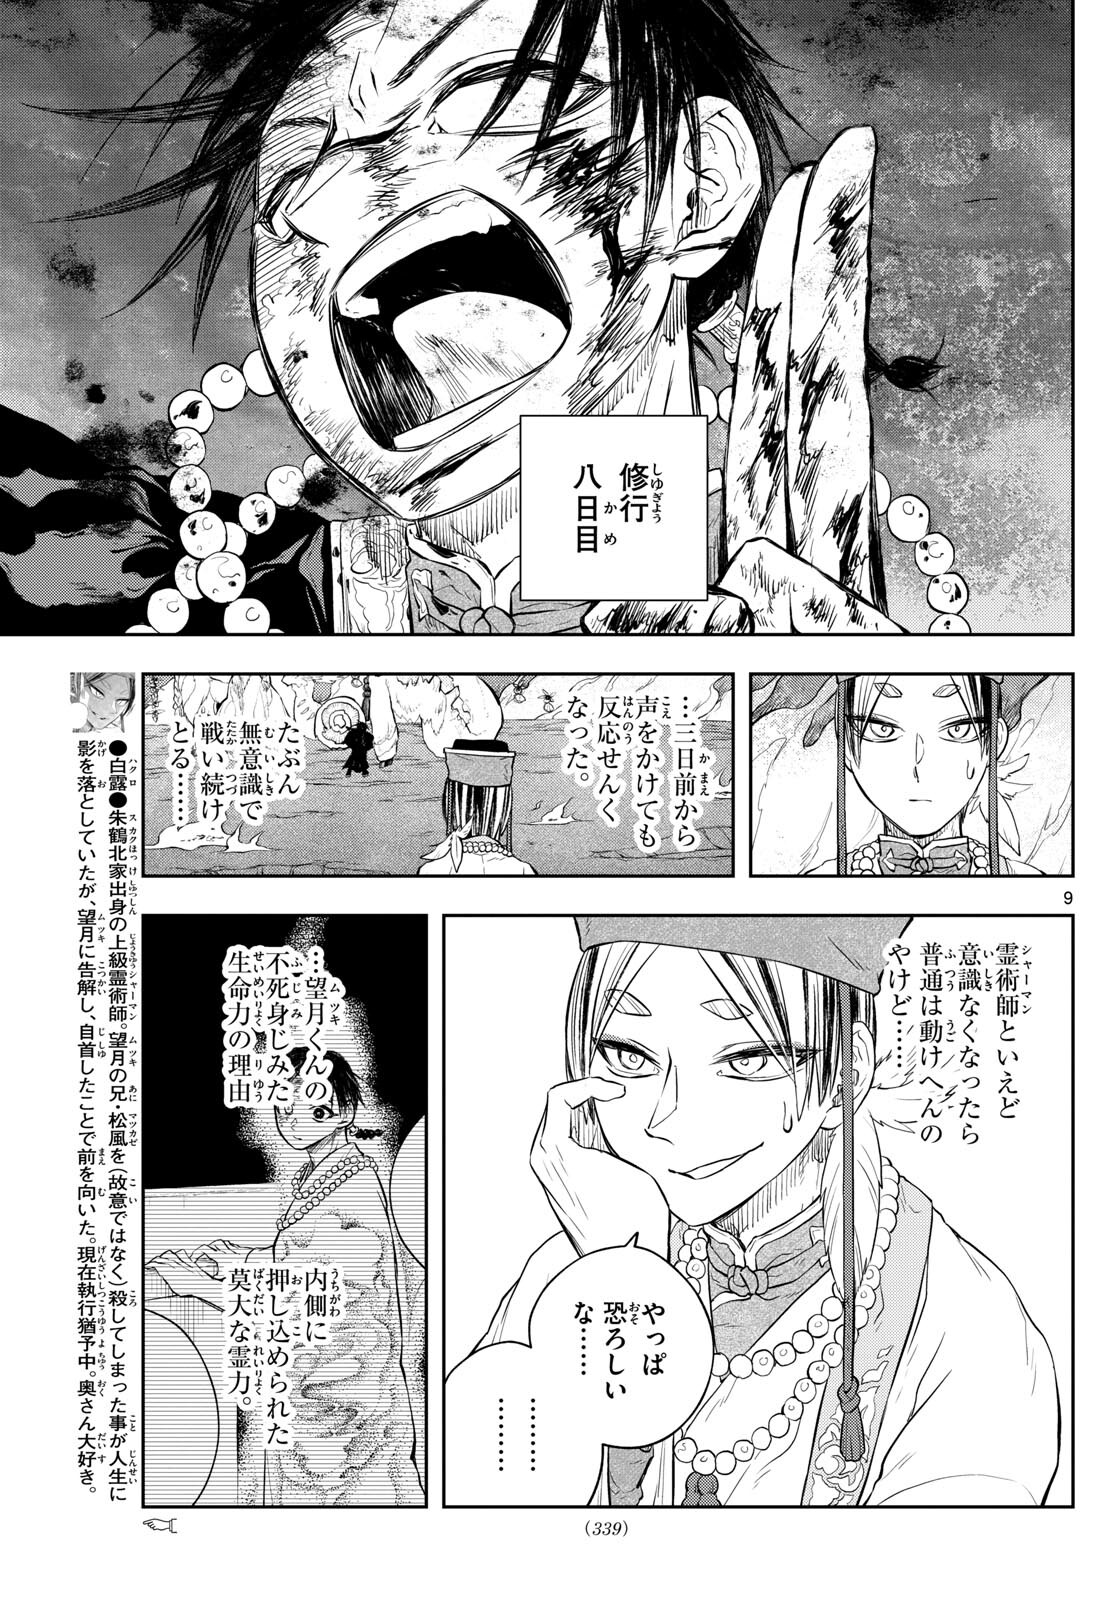 Akatsuki Jihen - Chapter 41 - Page 9